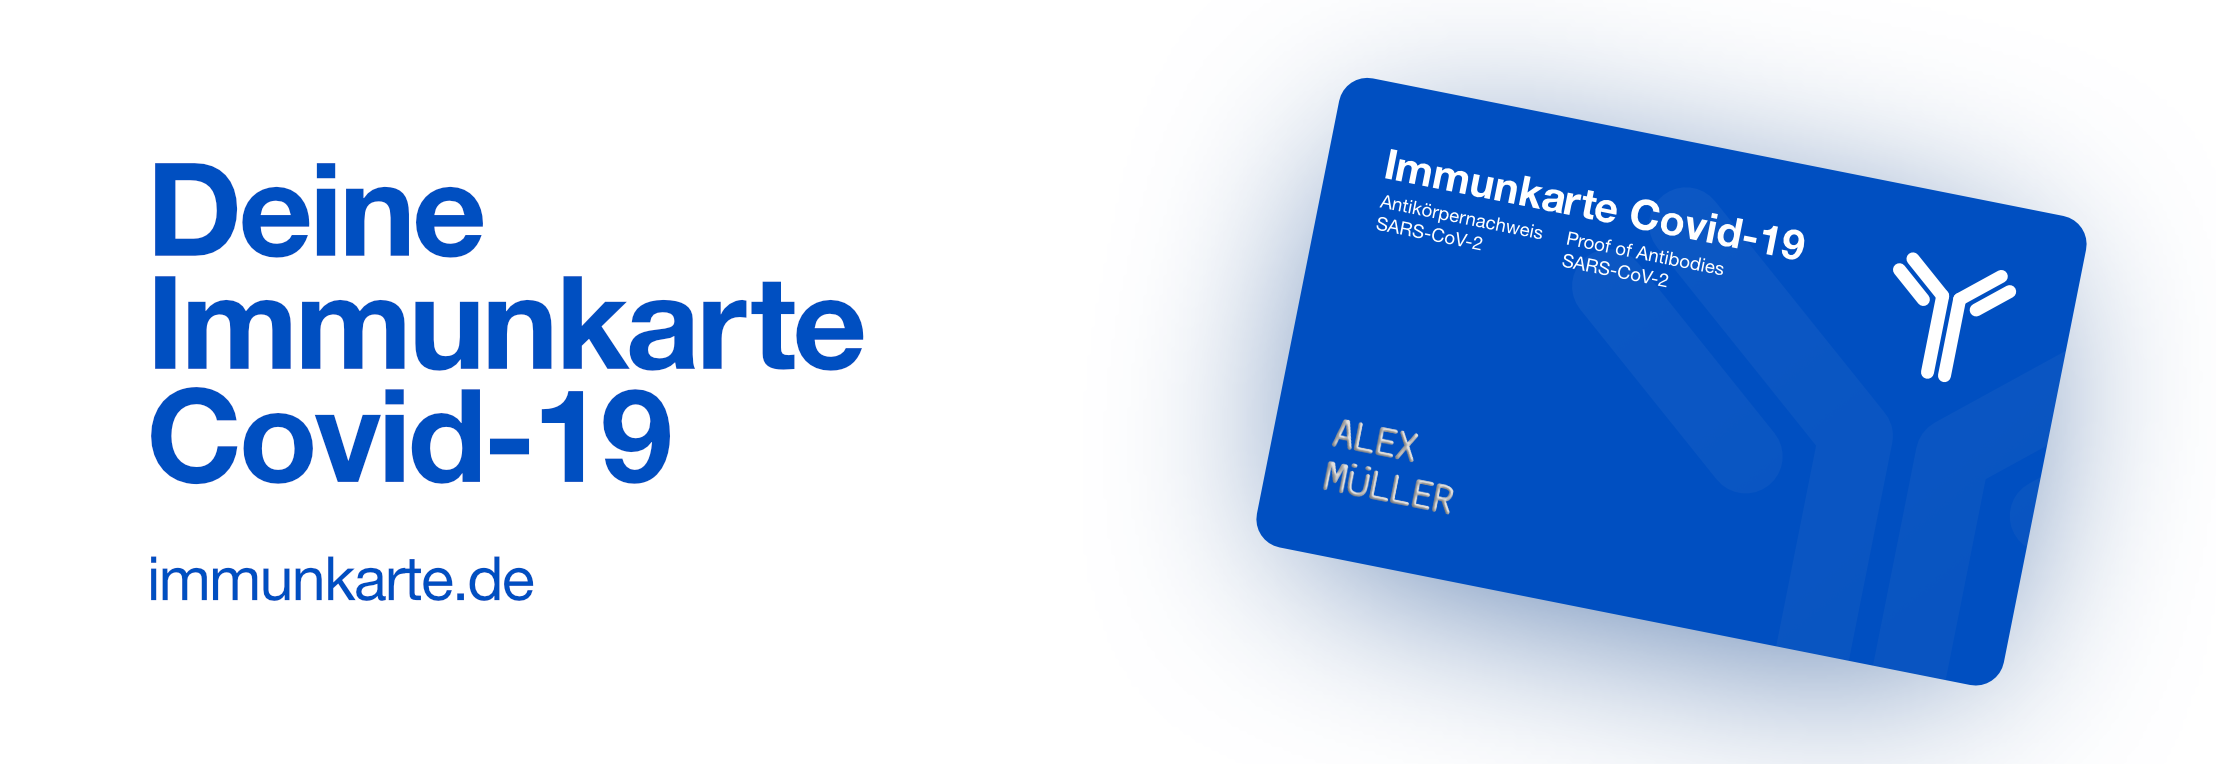 Immunkarte Covid-19 / startup von Frankfurt a. Main / Background